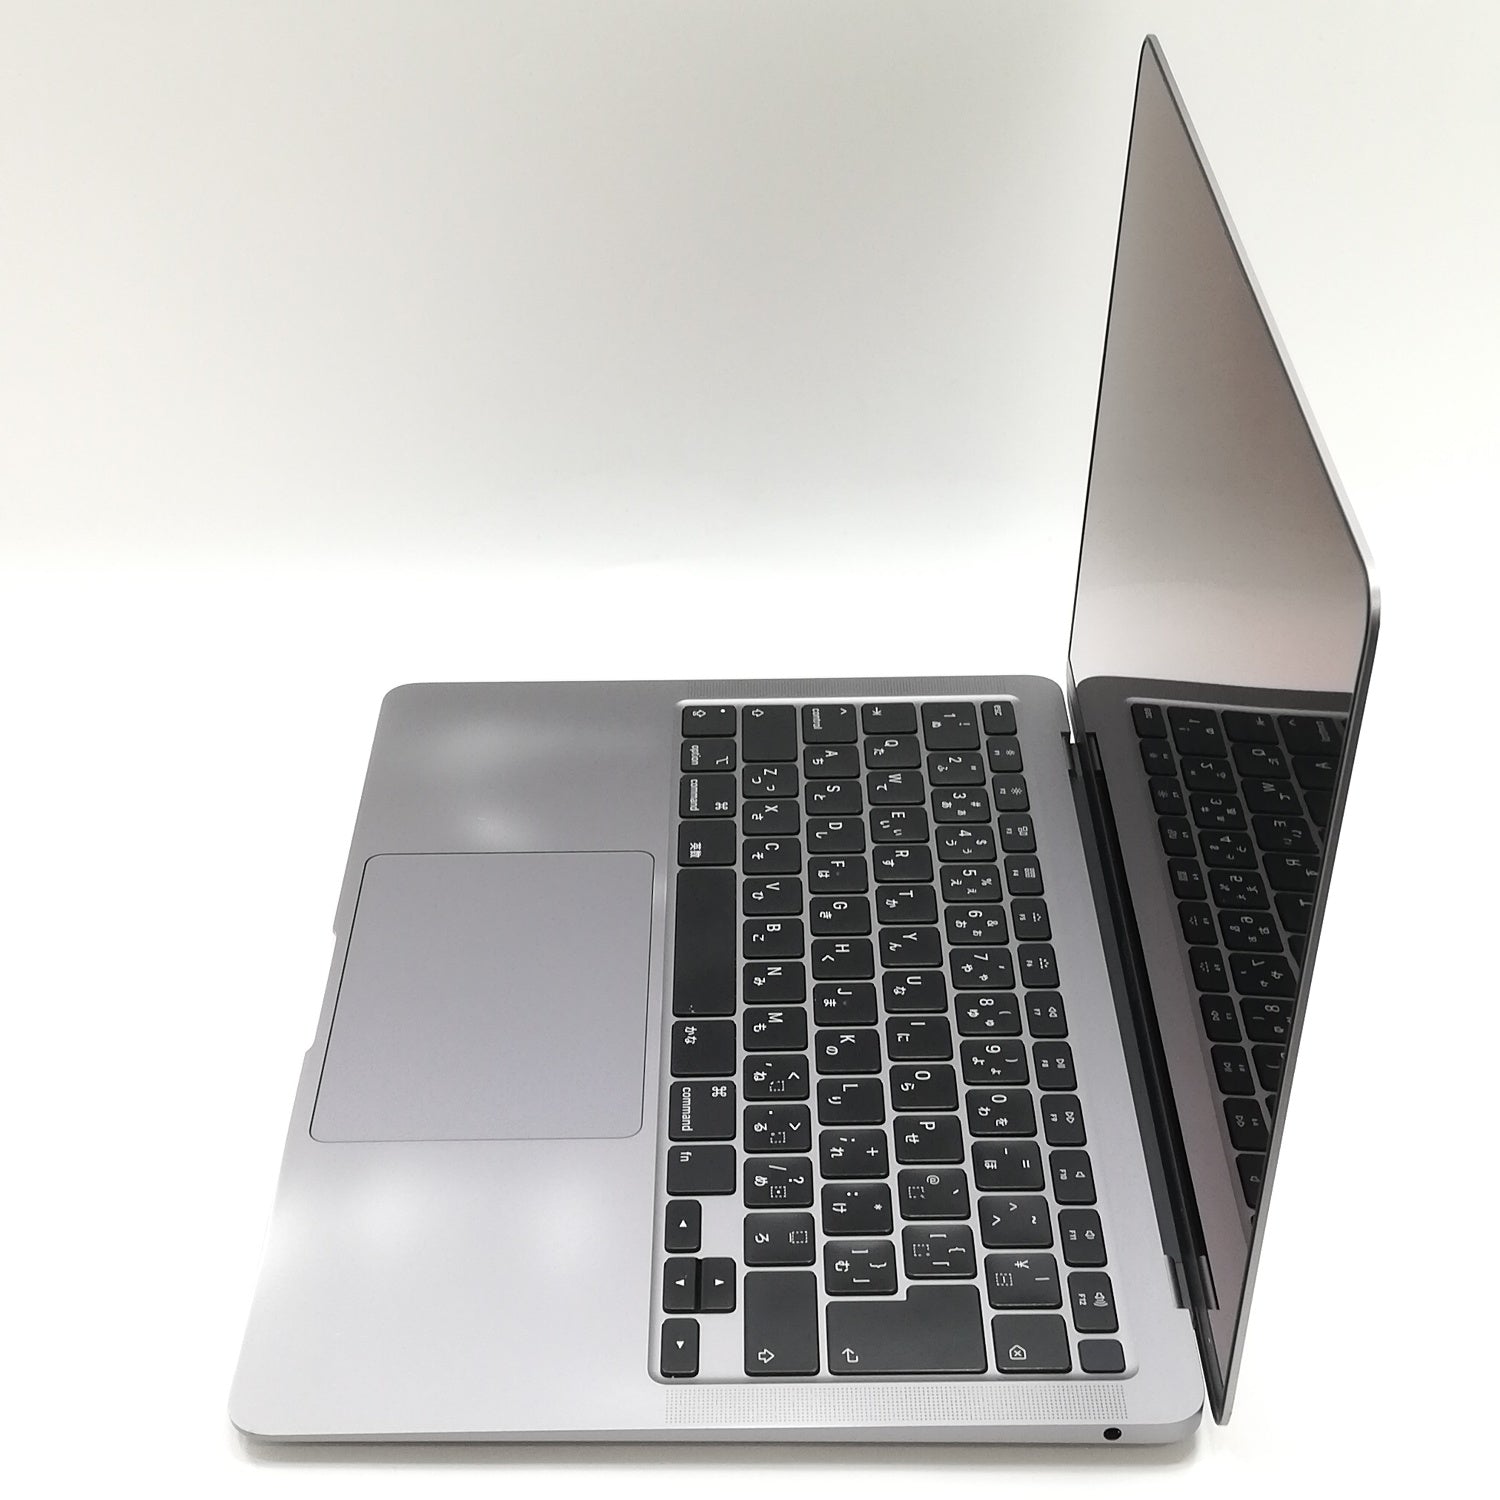 MacBook Air Retina Display 13インチ / 2020 / 16GB / 256GB 